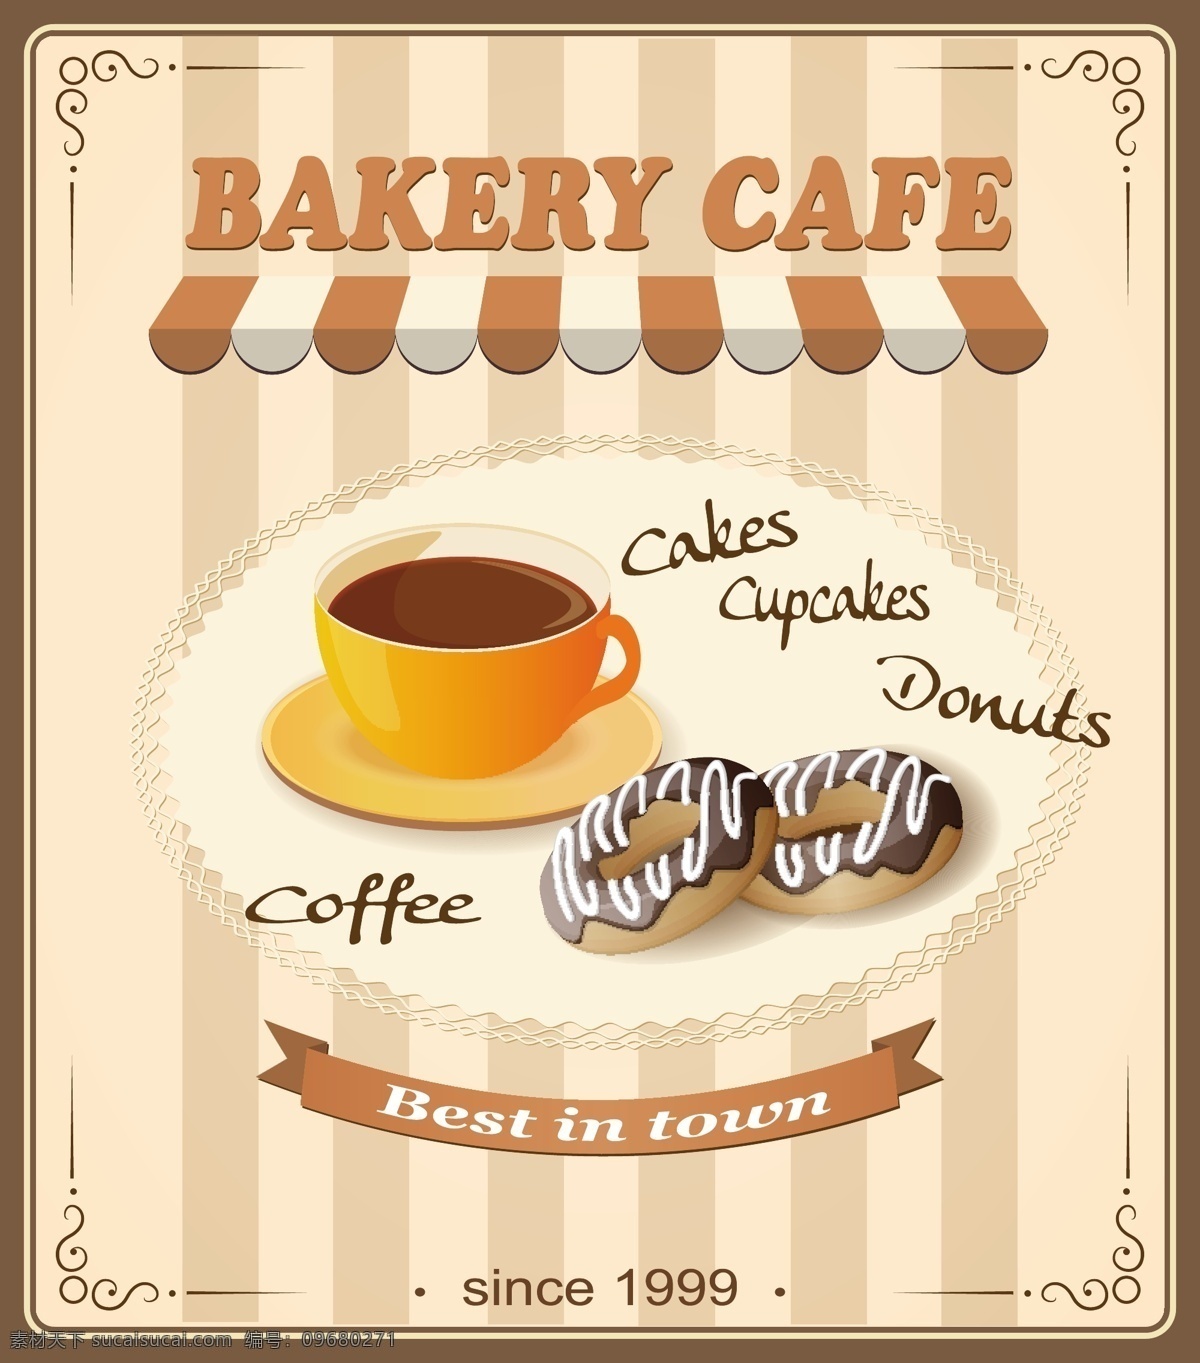 咖啡免费下载 饼干 餐饮美食 咖啡 生活百科 素描 饮料 装饰 烘焙咖啡 甜圈 矢量 咖啡主题矢量 矢量图